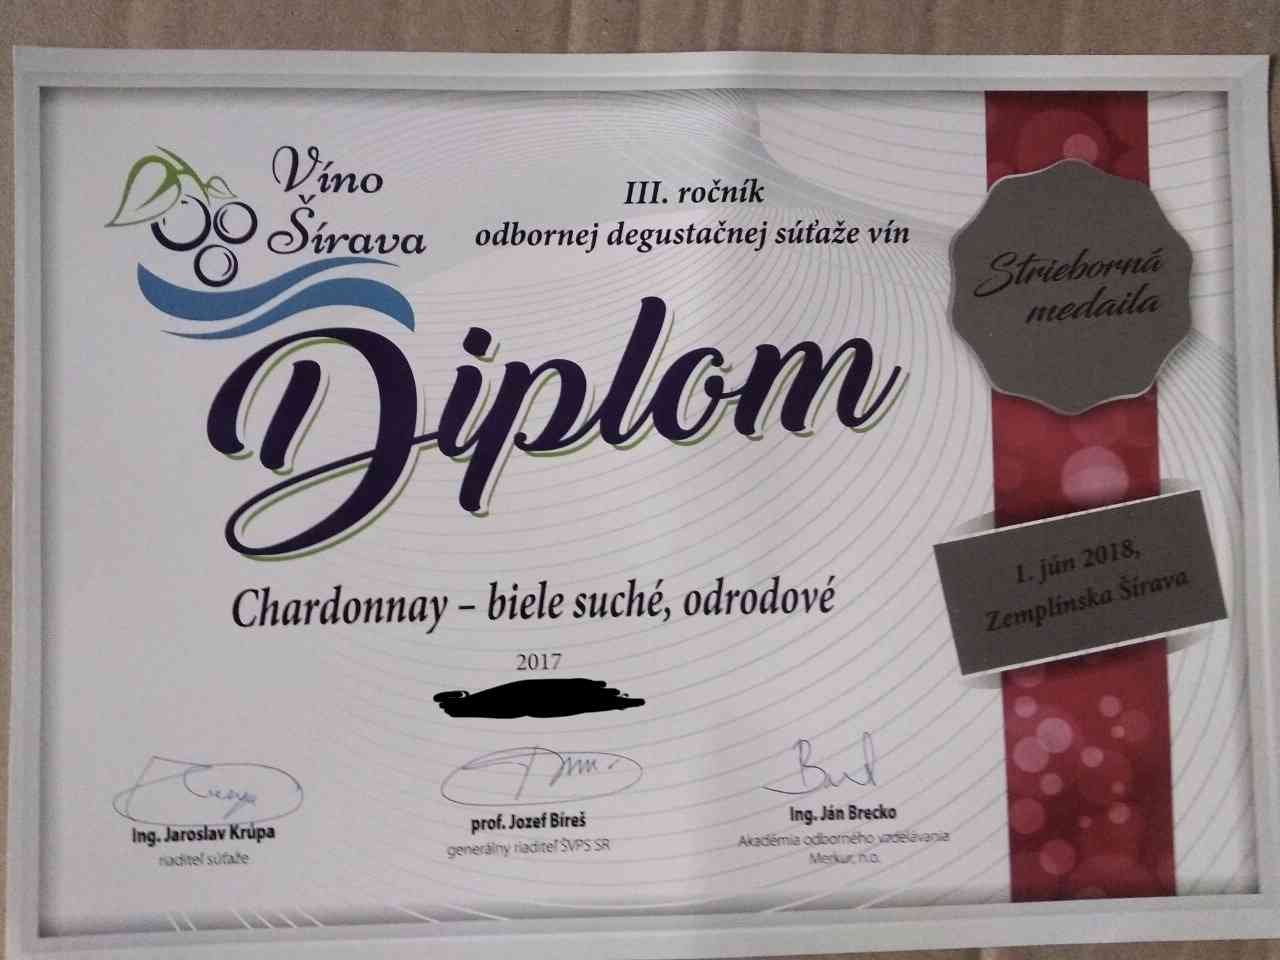 Награда серебряной медалью за вино Шардоне на третьей ежегодной дегустации вин в Словакии